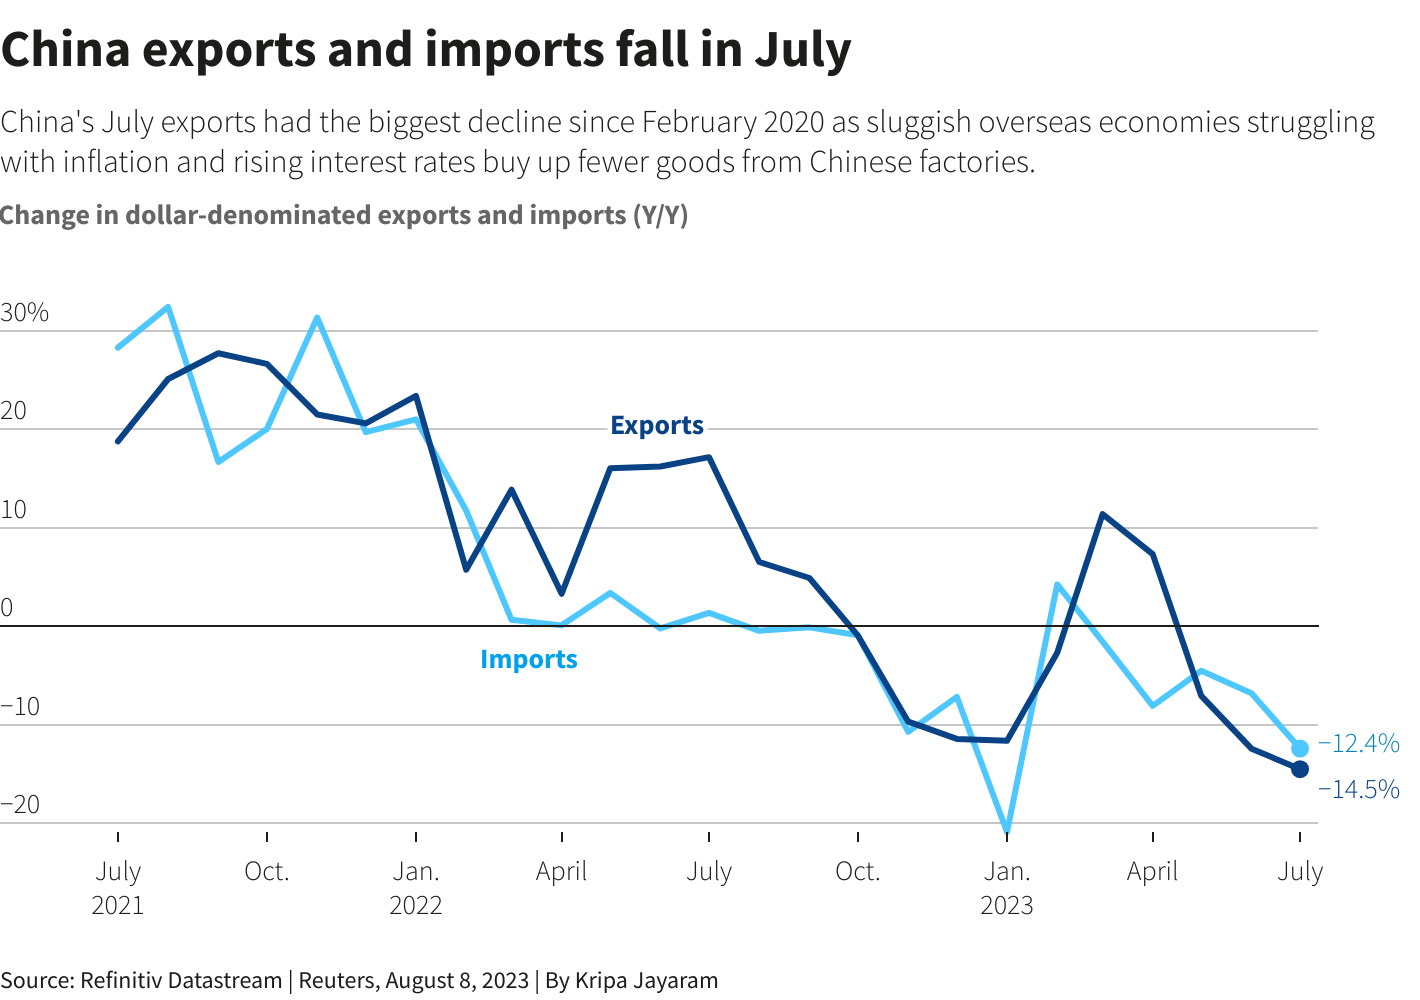 Xuất nhập khẩu tháng 7 của Trung Quốc giảm kỷ lục, đe dọa phục hồi - Ảnh 1.